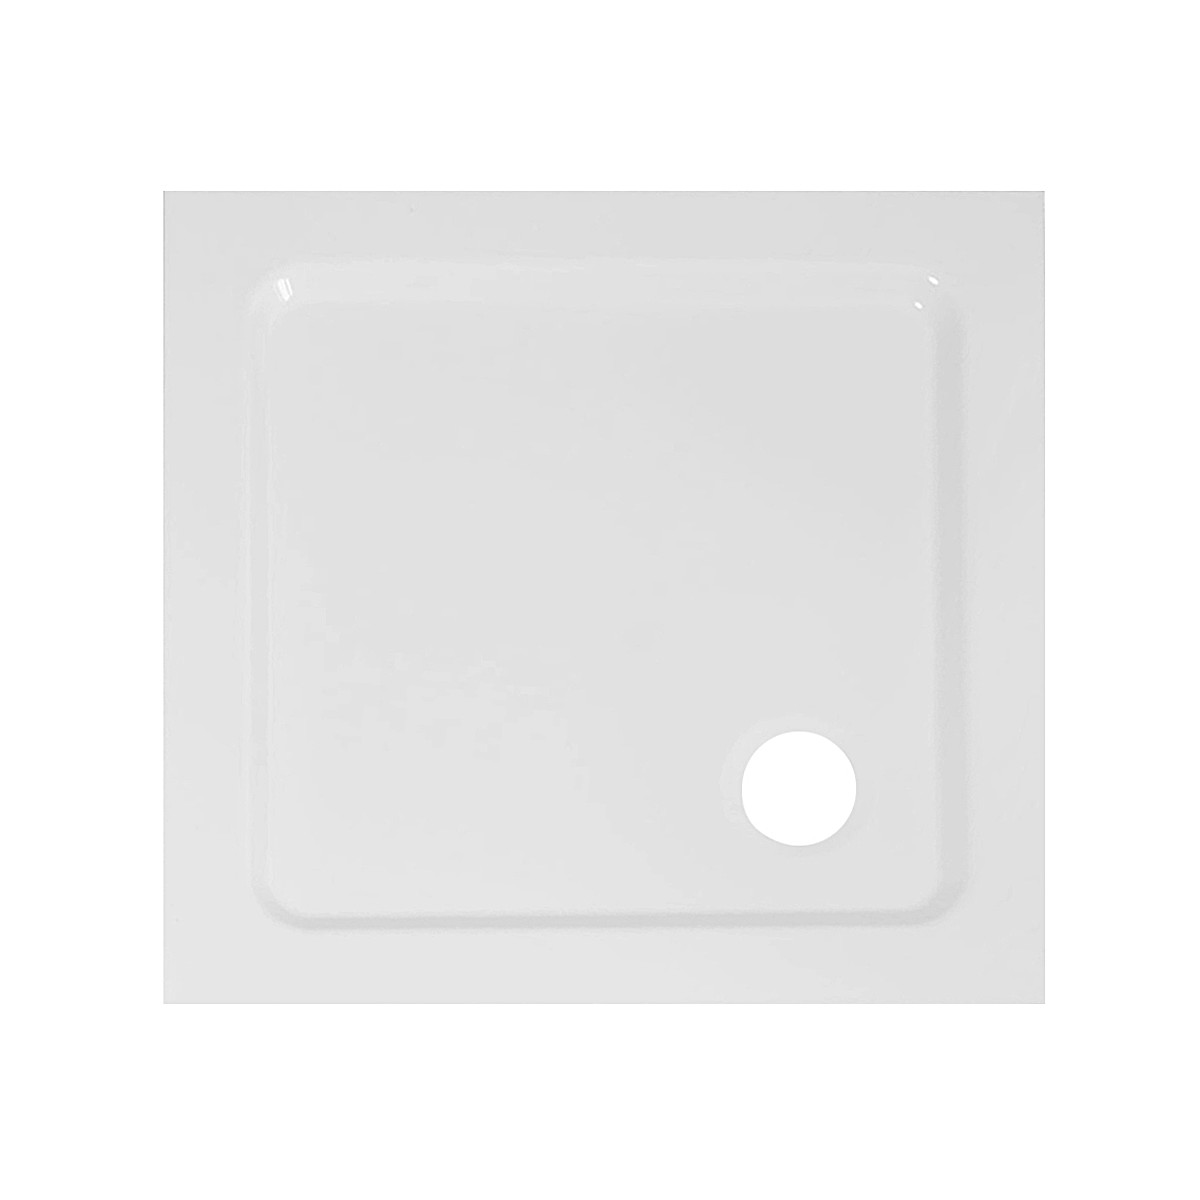 Piatto Doccia Acrilico Quadrato Ultraflat h 3.5cm Bianco